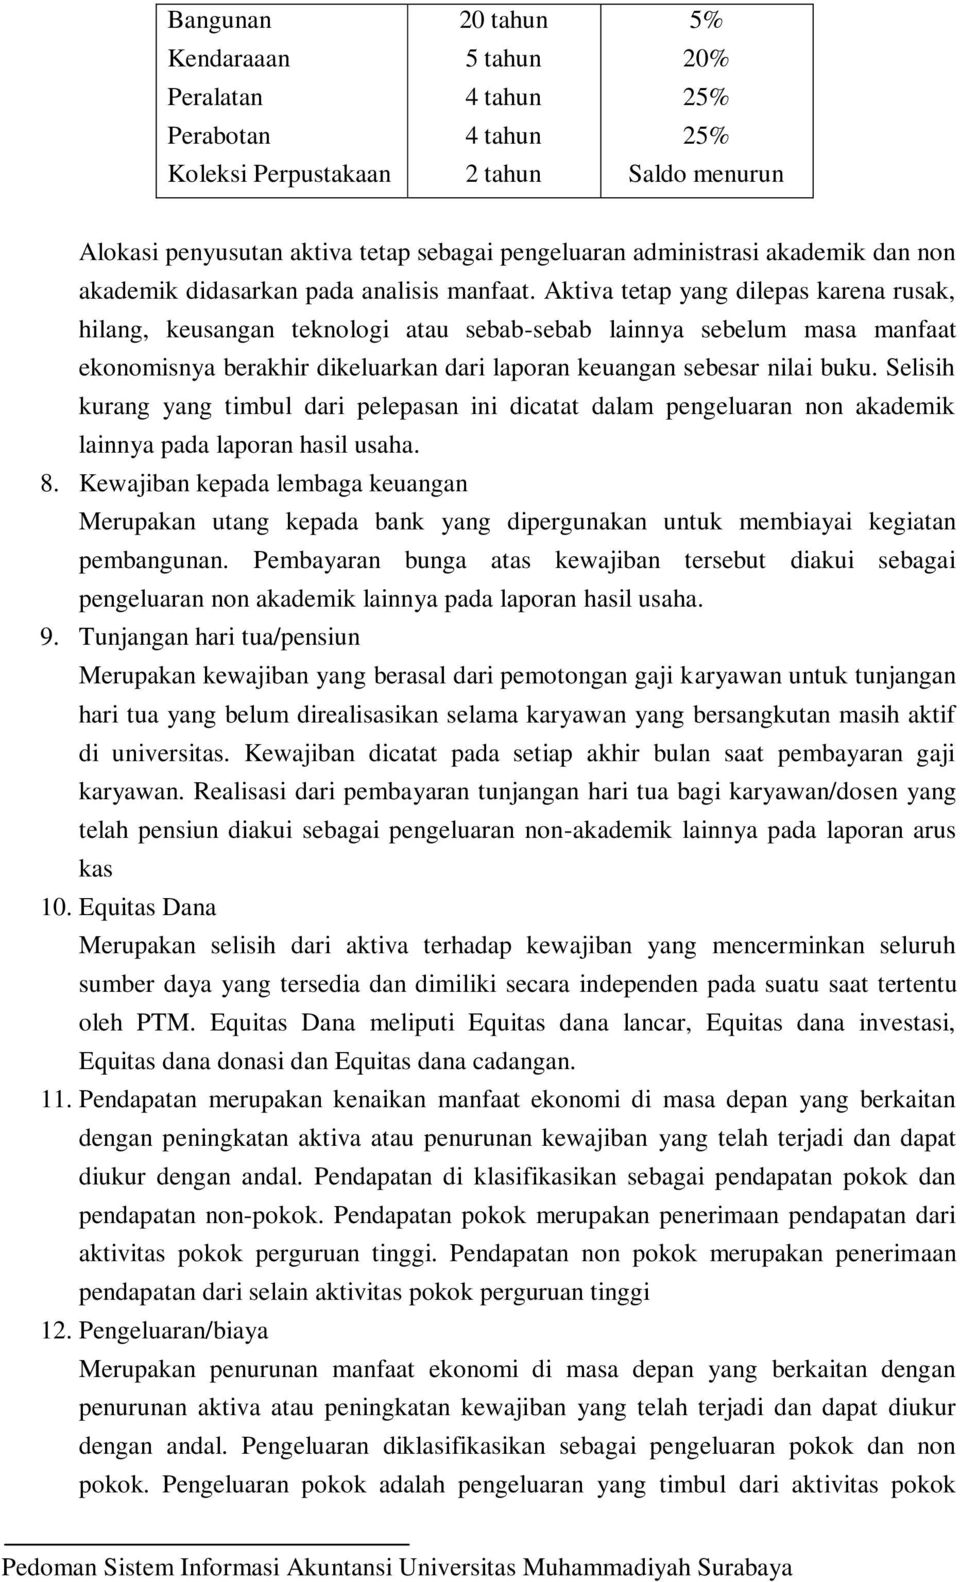 Pedoman Sistem Informasi Akuntansi Universitas Muhammadiyah Surabaya Pdf Free Download